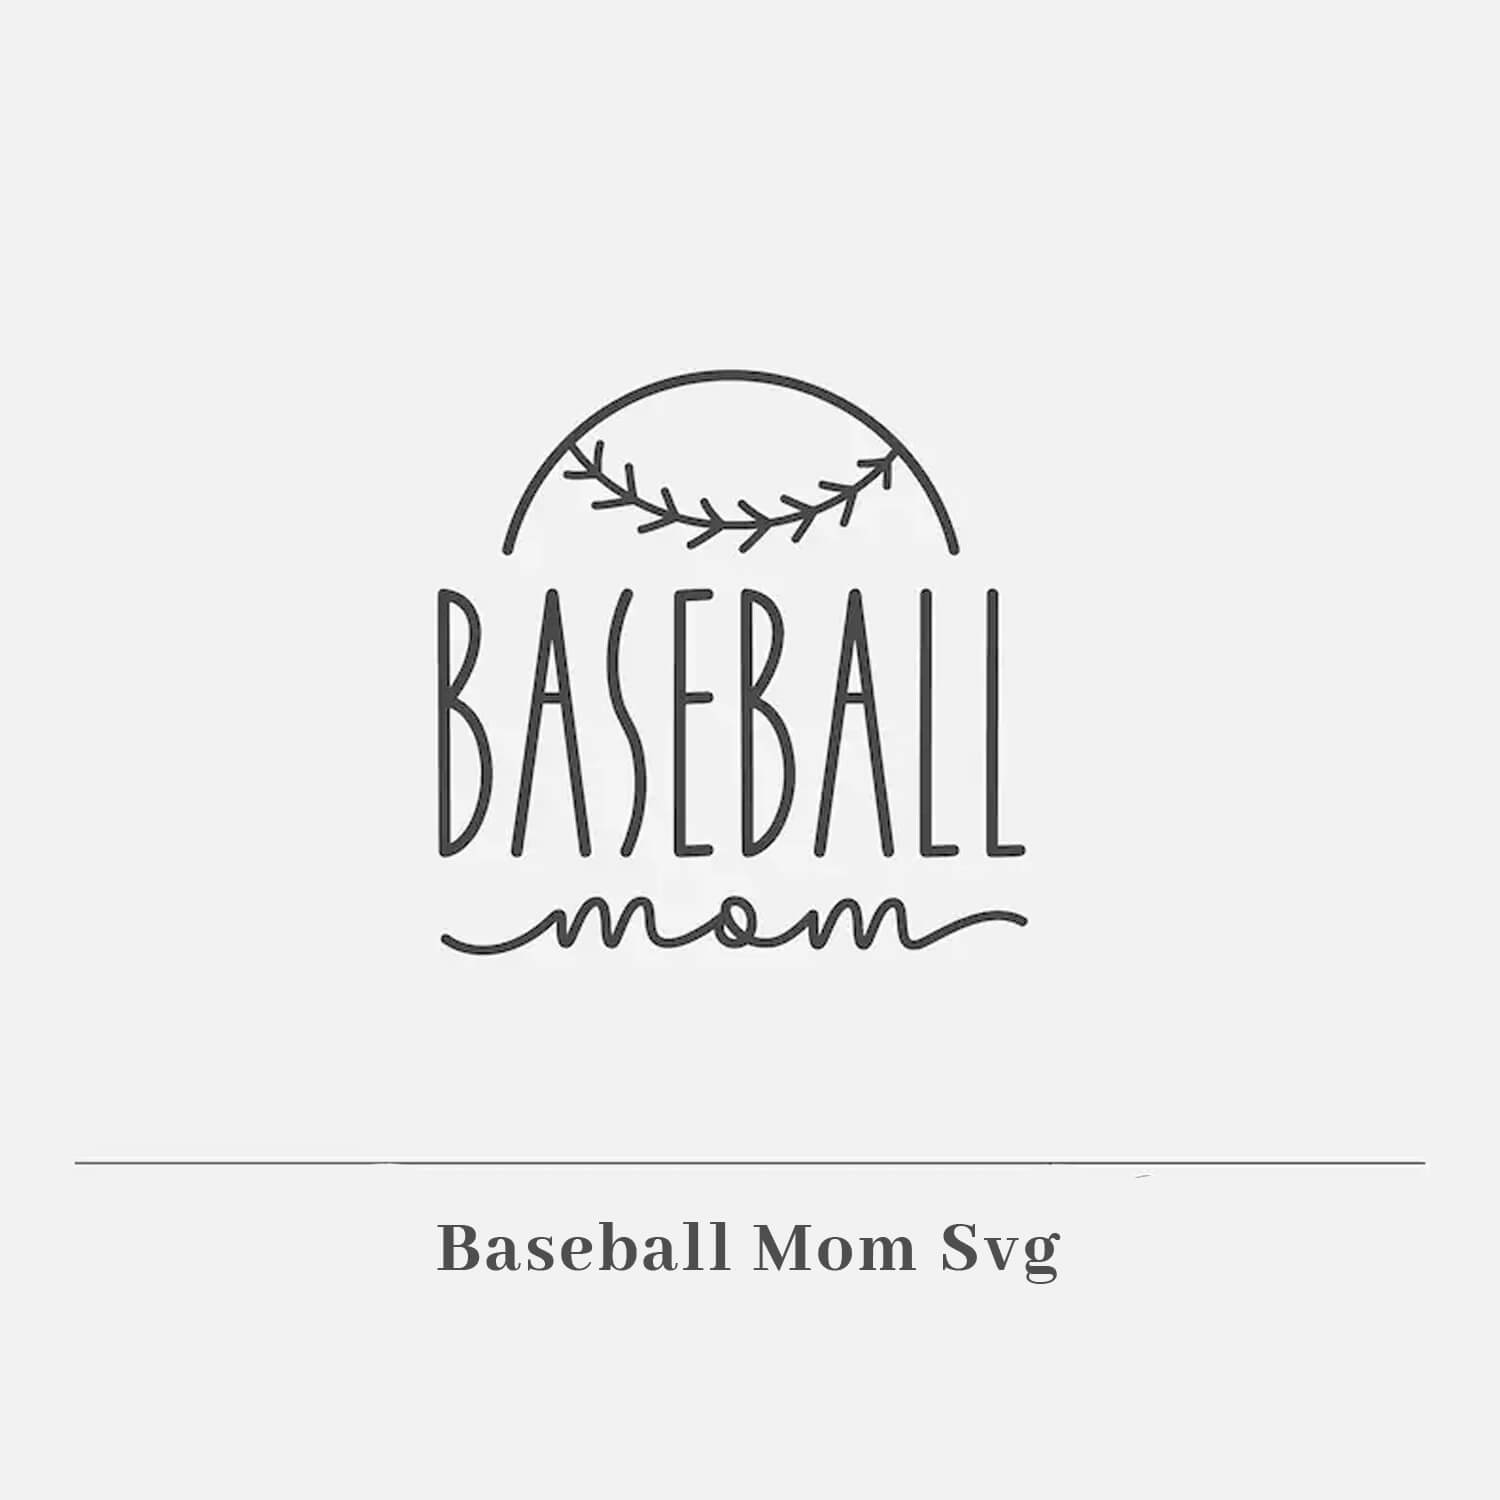 Baseball mom svg, mom svg, baseball svg, baseball clipart, baseball ,  baseball mom svg